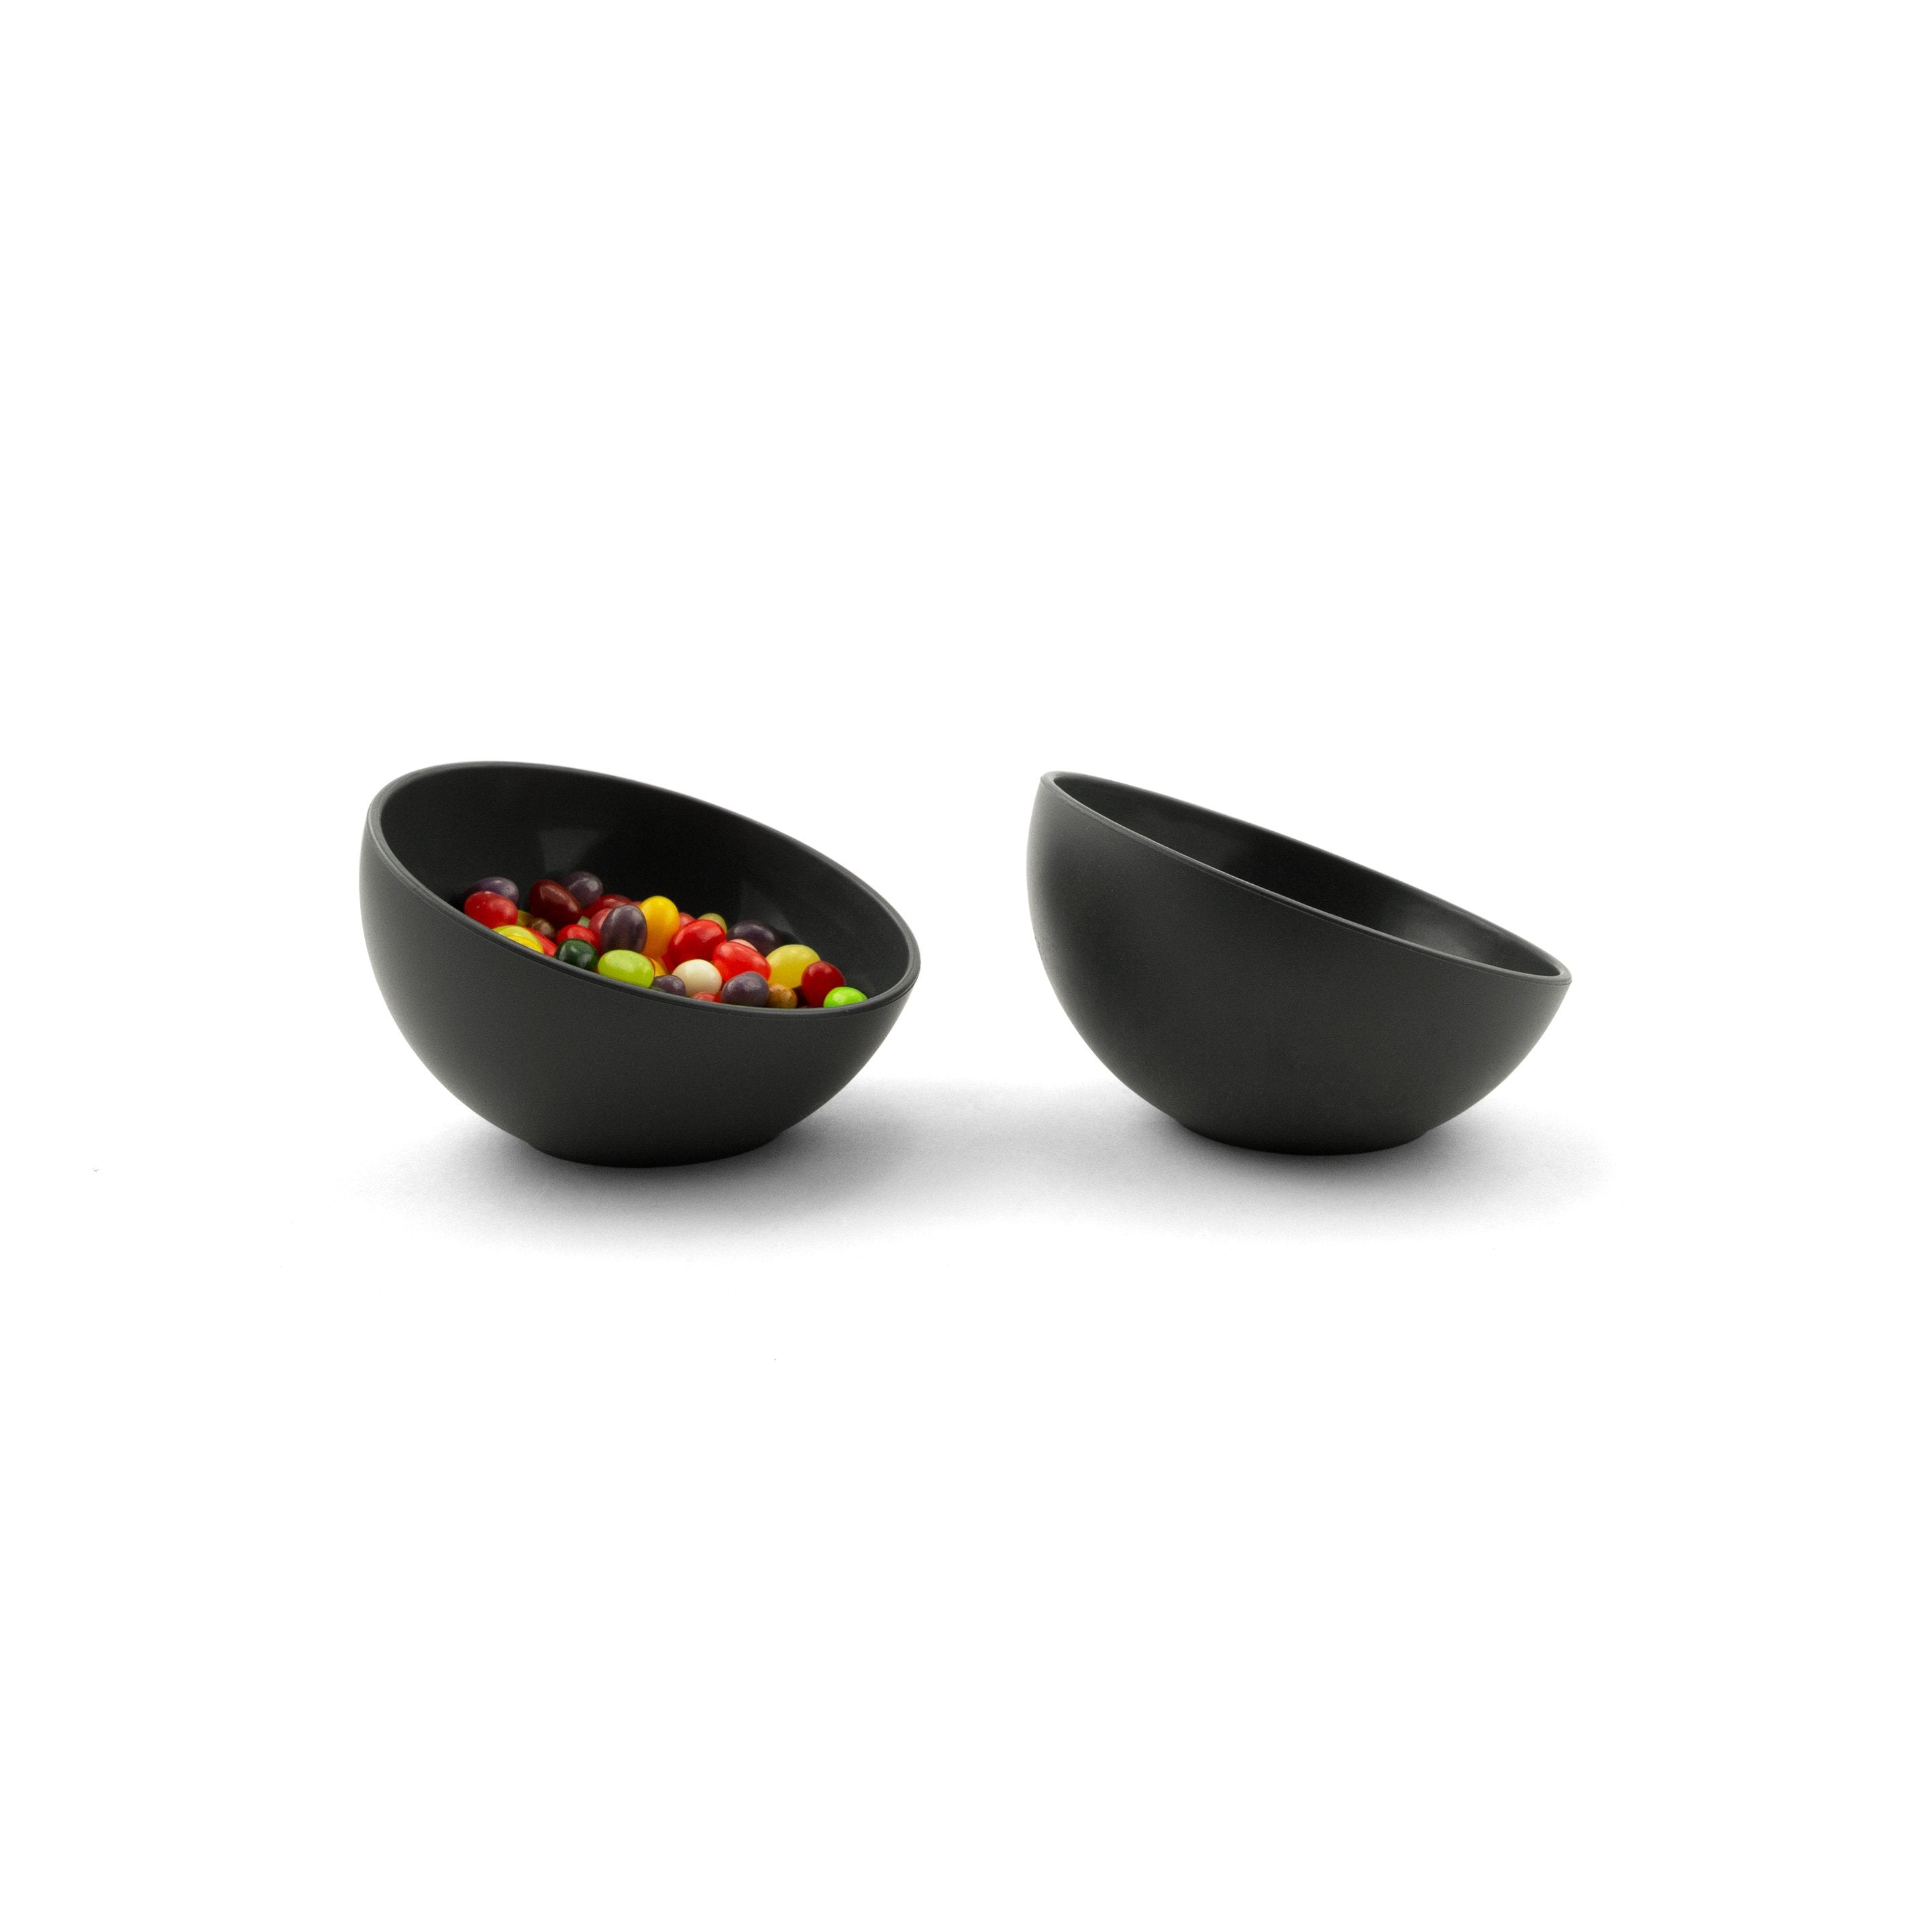 tilt x-small bowls